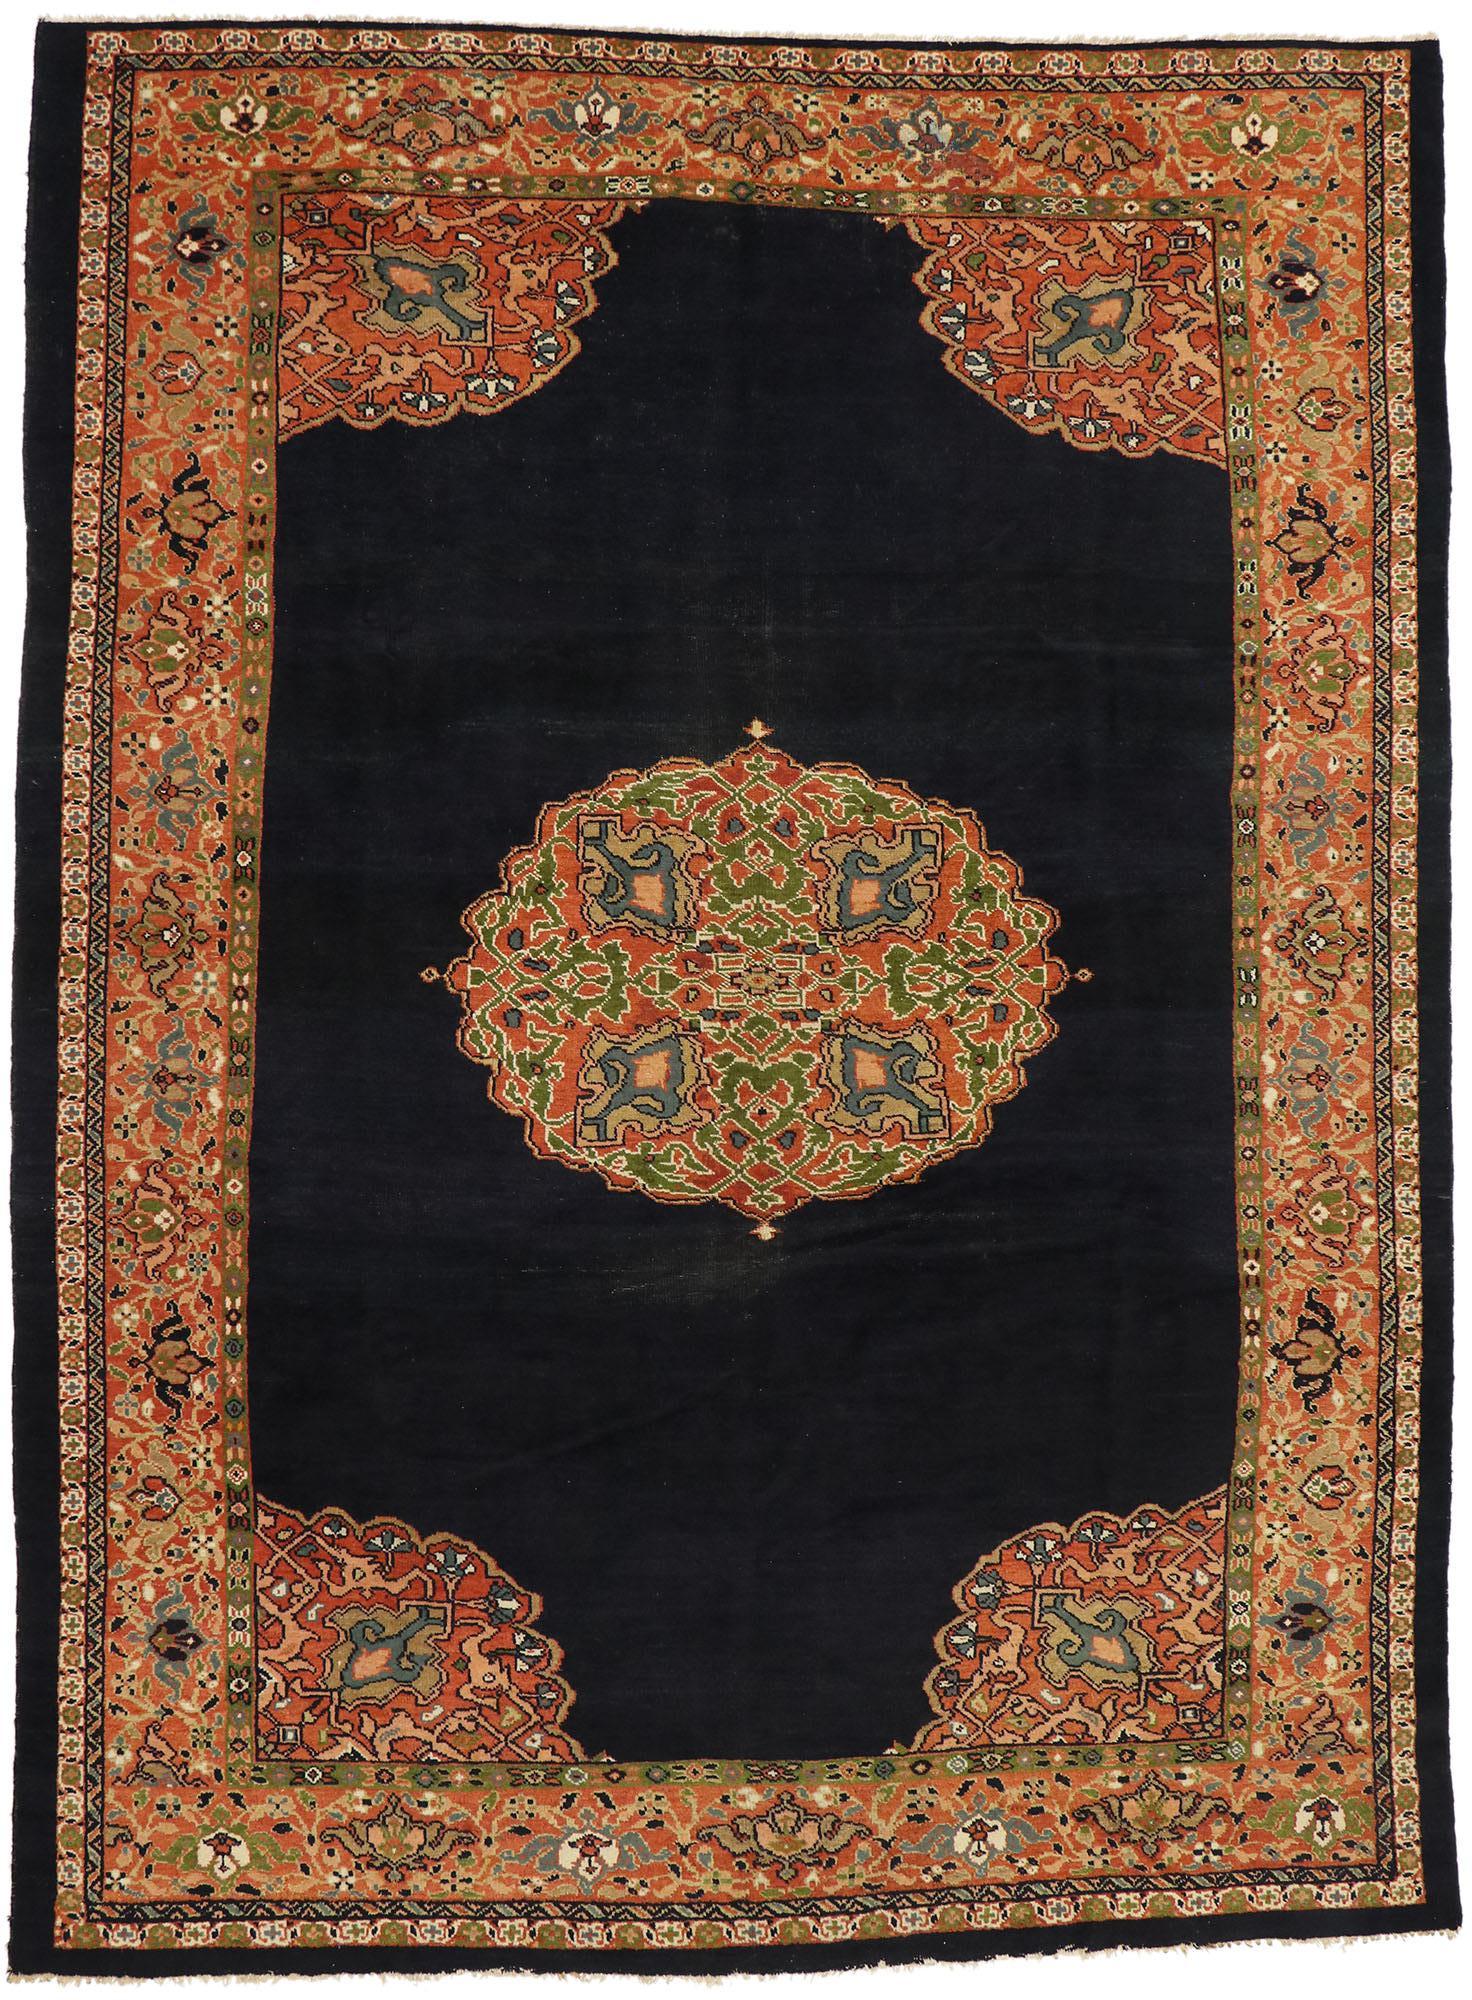 76774 Tapis Persan Sultanabad de la fin du 19ème siècle avec un style jacobéen moderne 09'09 x 13'03. Avec son motif botanique audacieux et son attrait saisissant, ce tapis persan ancien en laine nouée à la main de type Sultanabad s'intègre